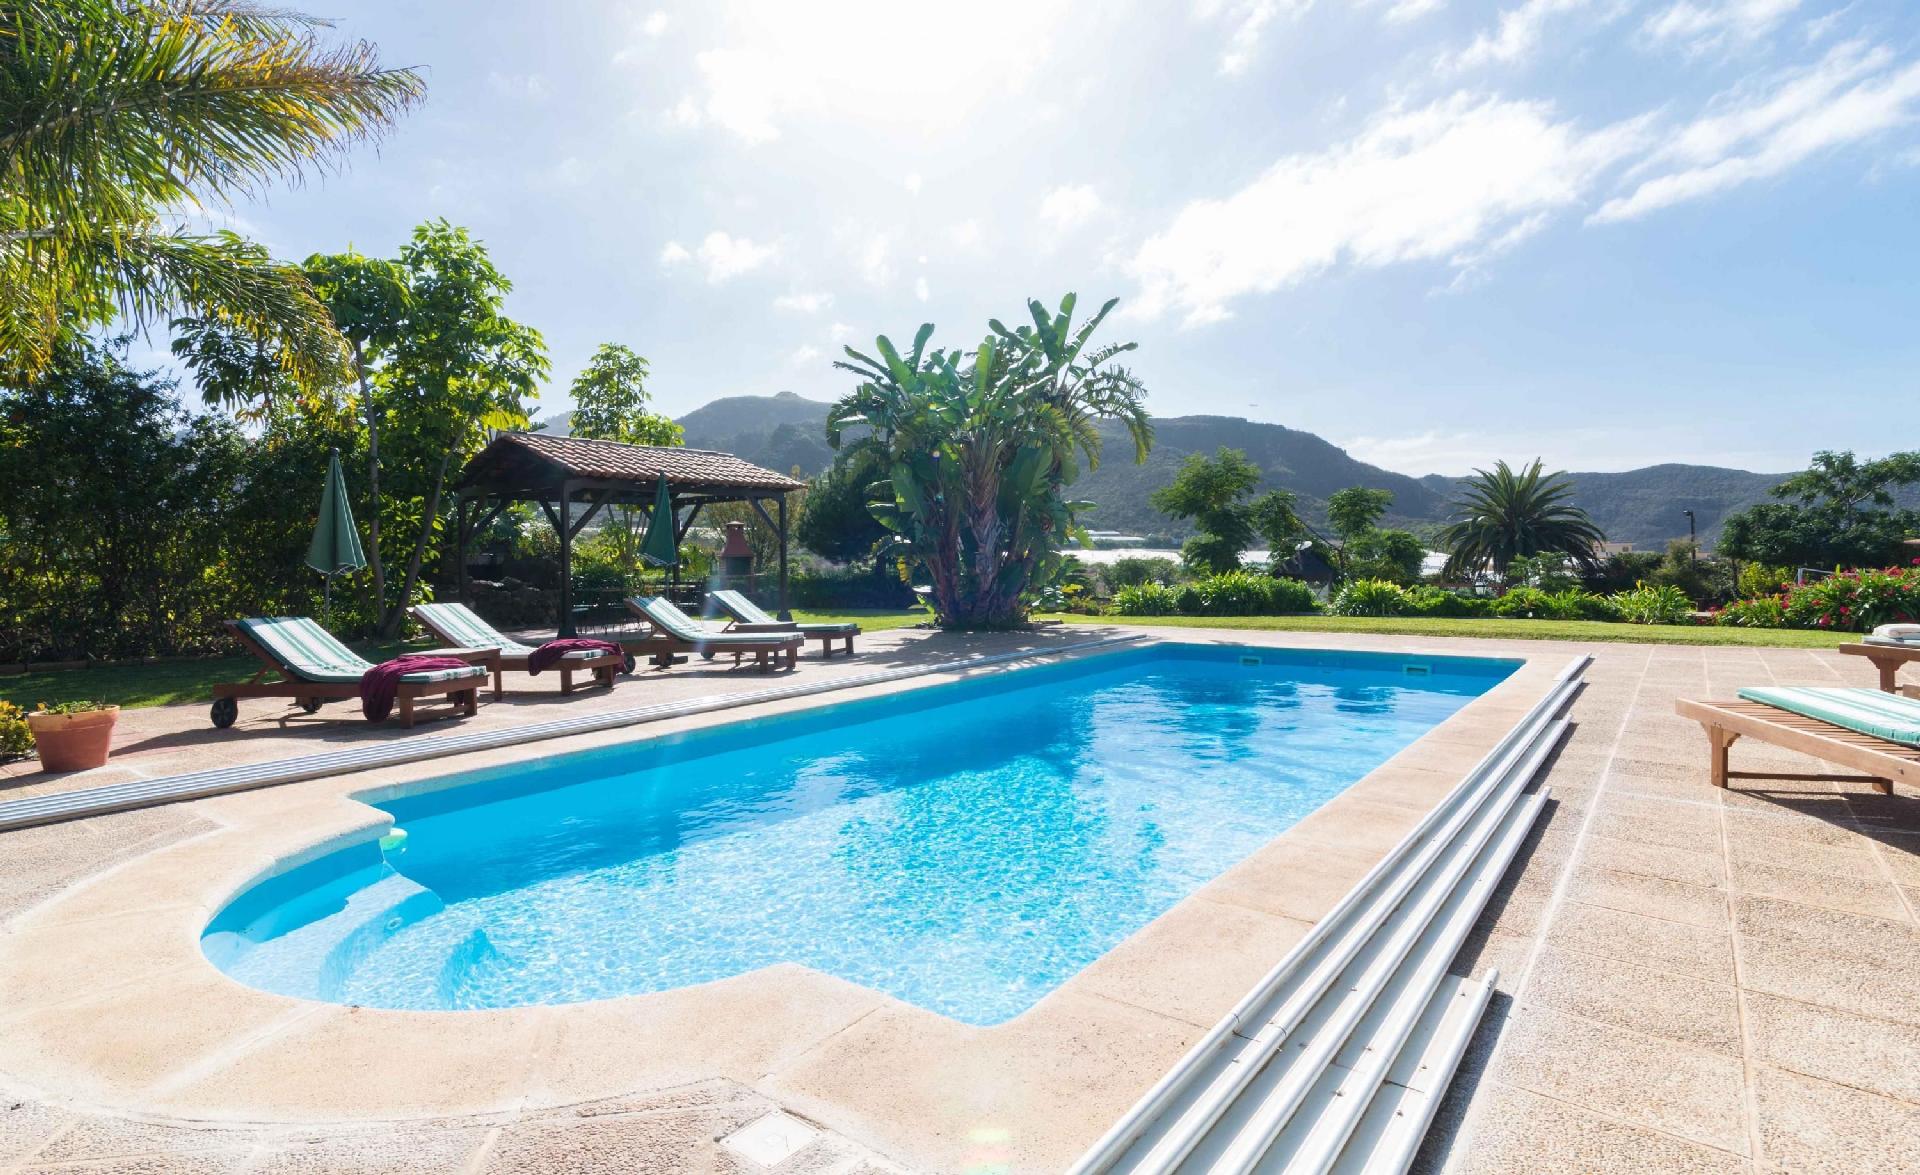 Ferienwohnung in La Laguna mit gemeinsamem Pool, G Ferienhaus in Spanien